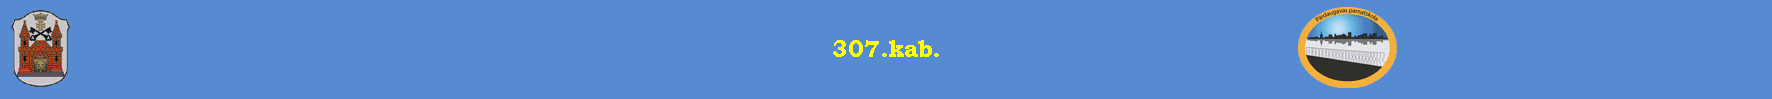 307.kab.